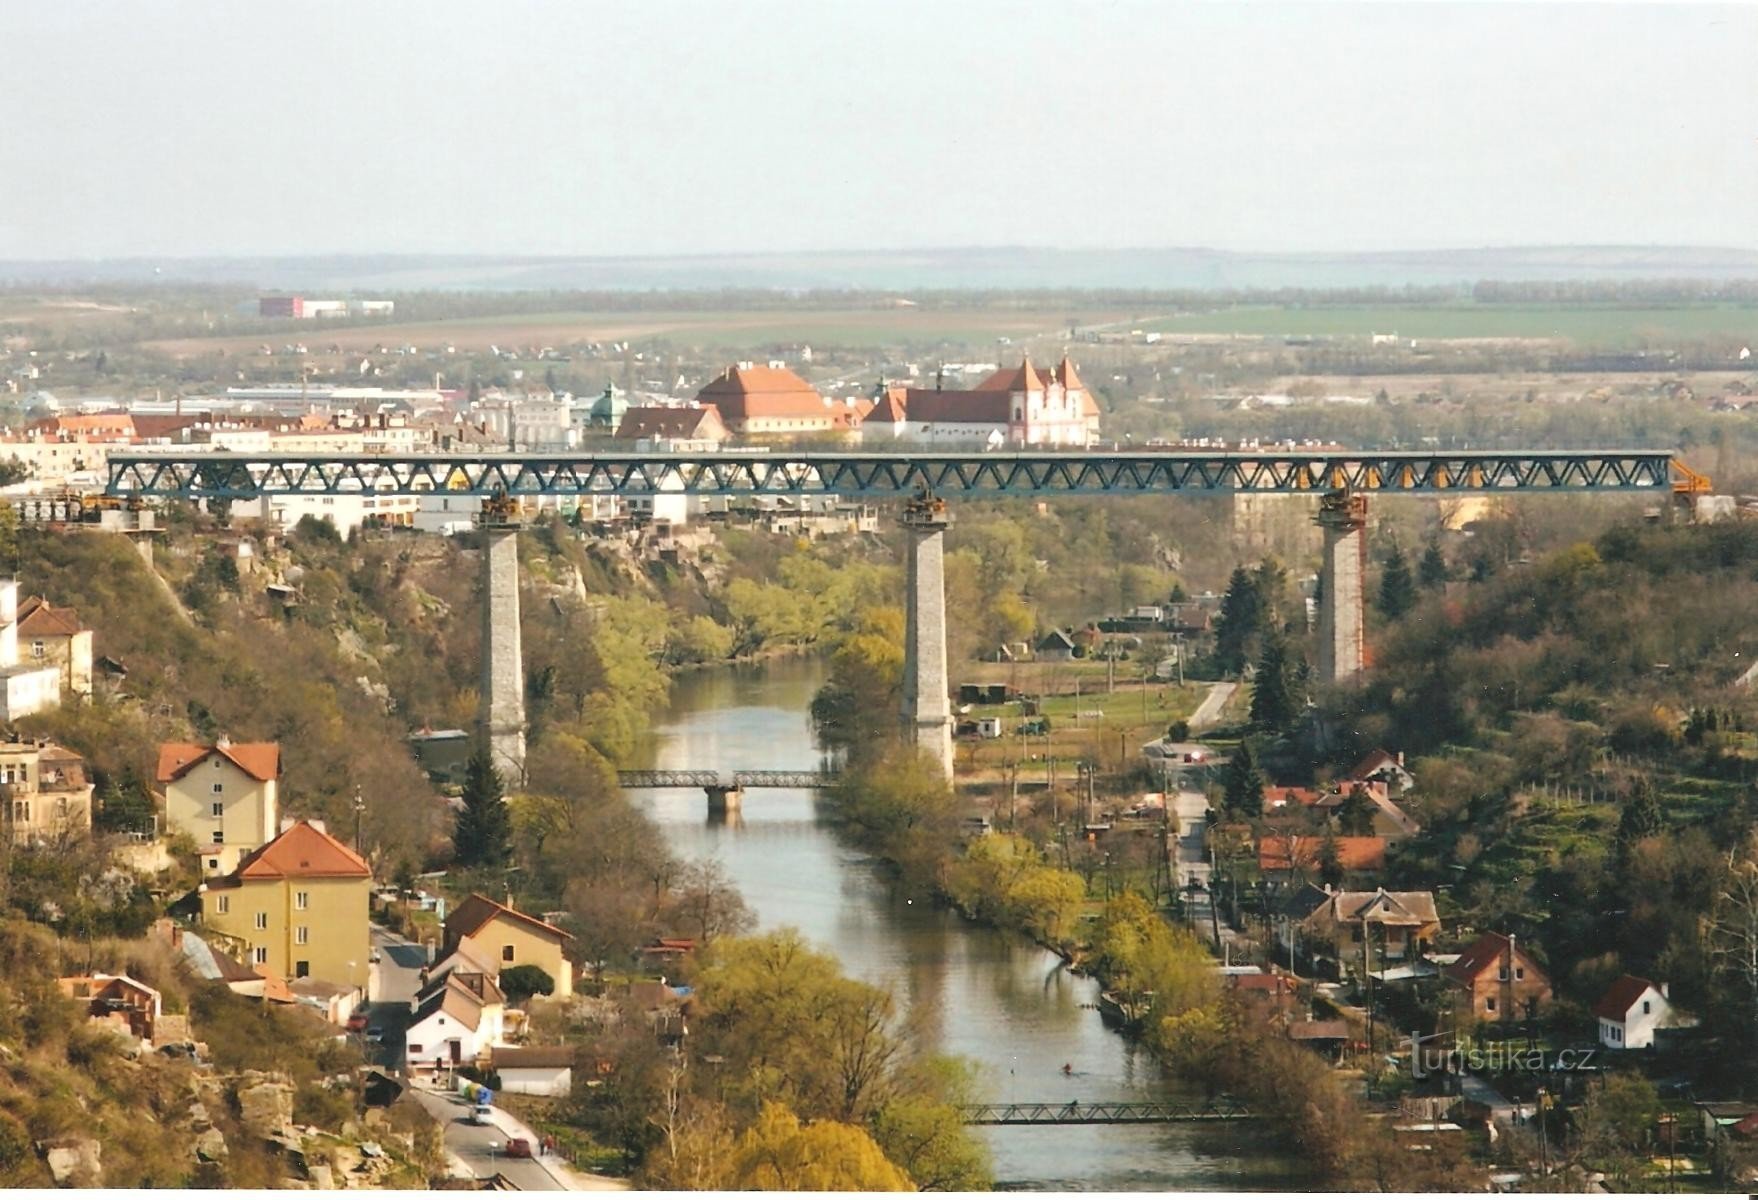 Viaducto ferroviario durante la reconstrucción en 2009